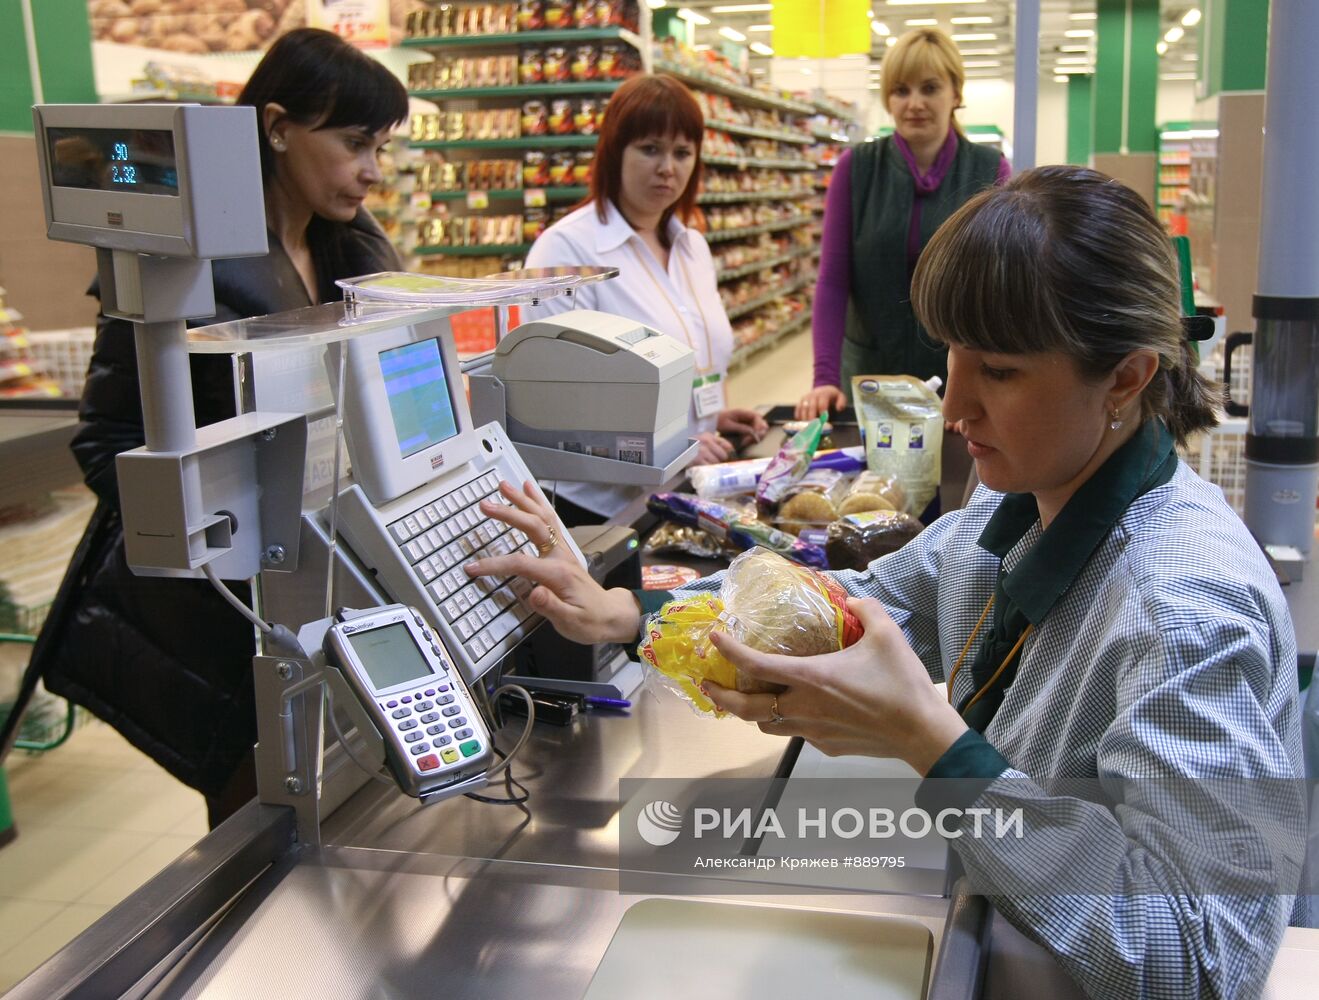 Открытие гипермаркета "О'КЕЙ" в Новосибирске